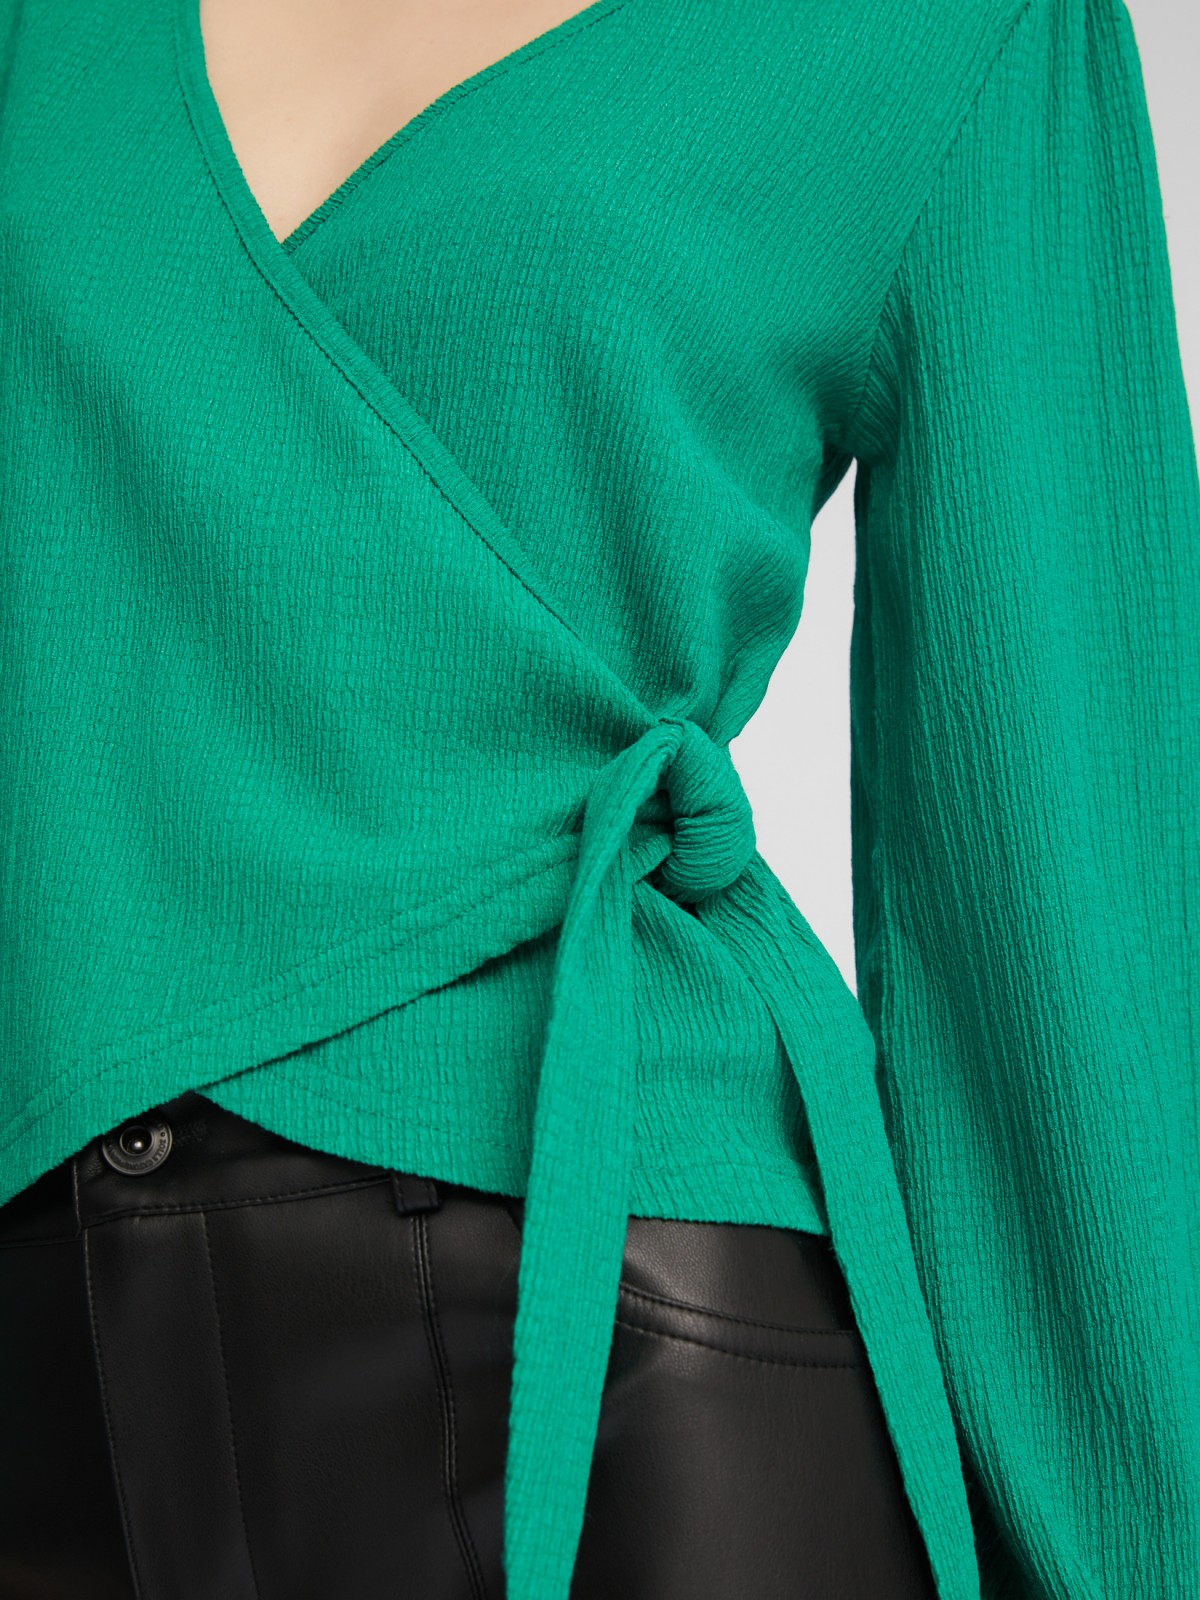 Укороченный топ-блузка на запах с объёмным рукавом zolla 024111162201, цвет зеленый, размер XS - фото 4